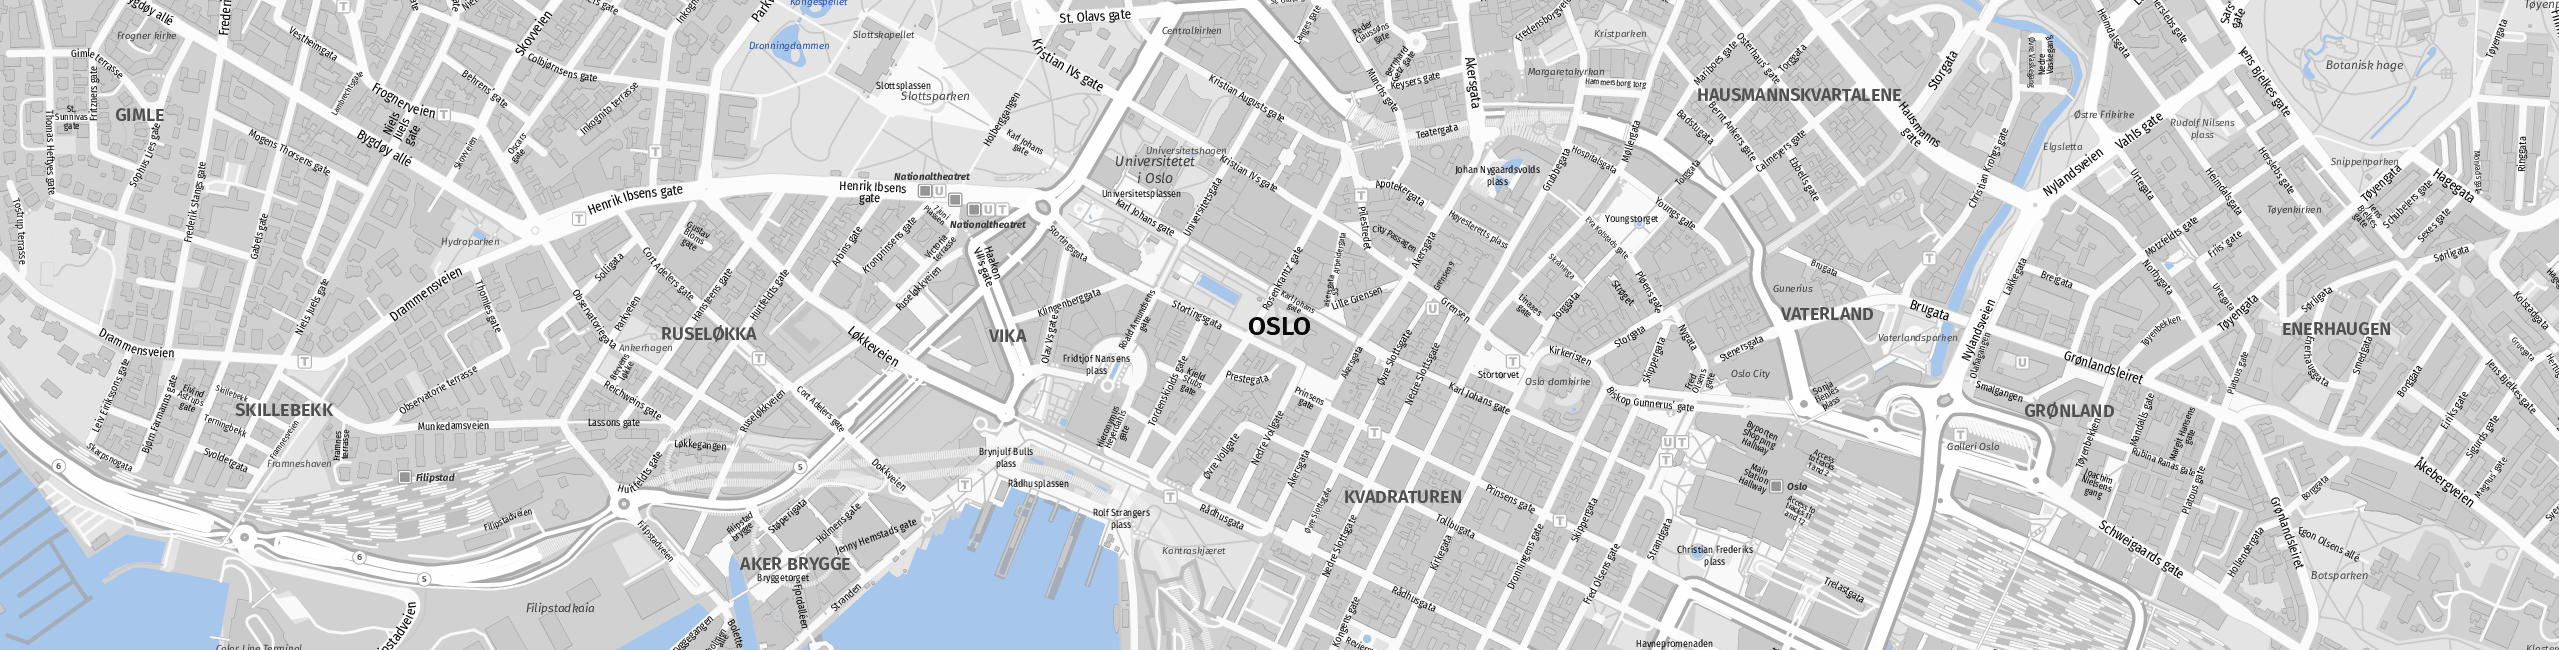 Stadtplan Oslo zum Downloaden.